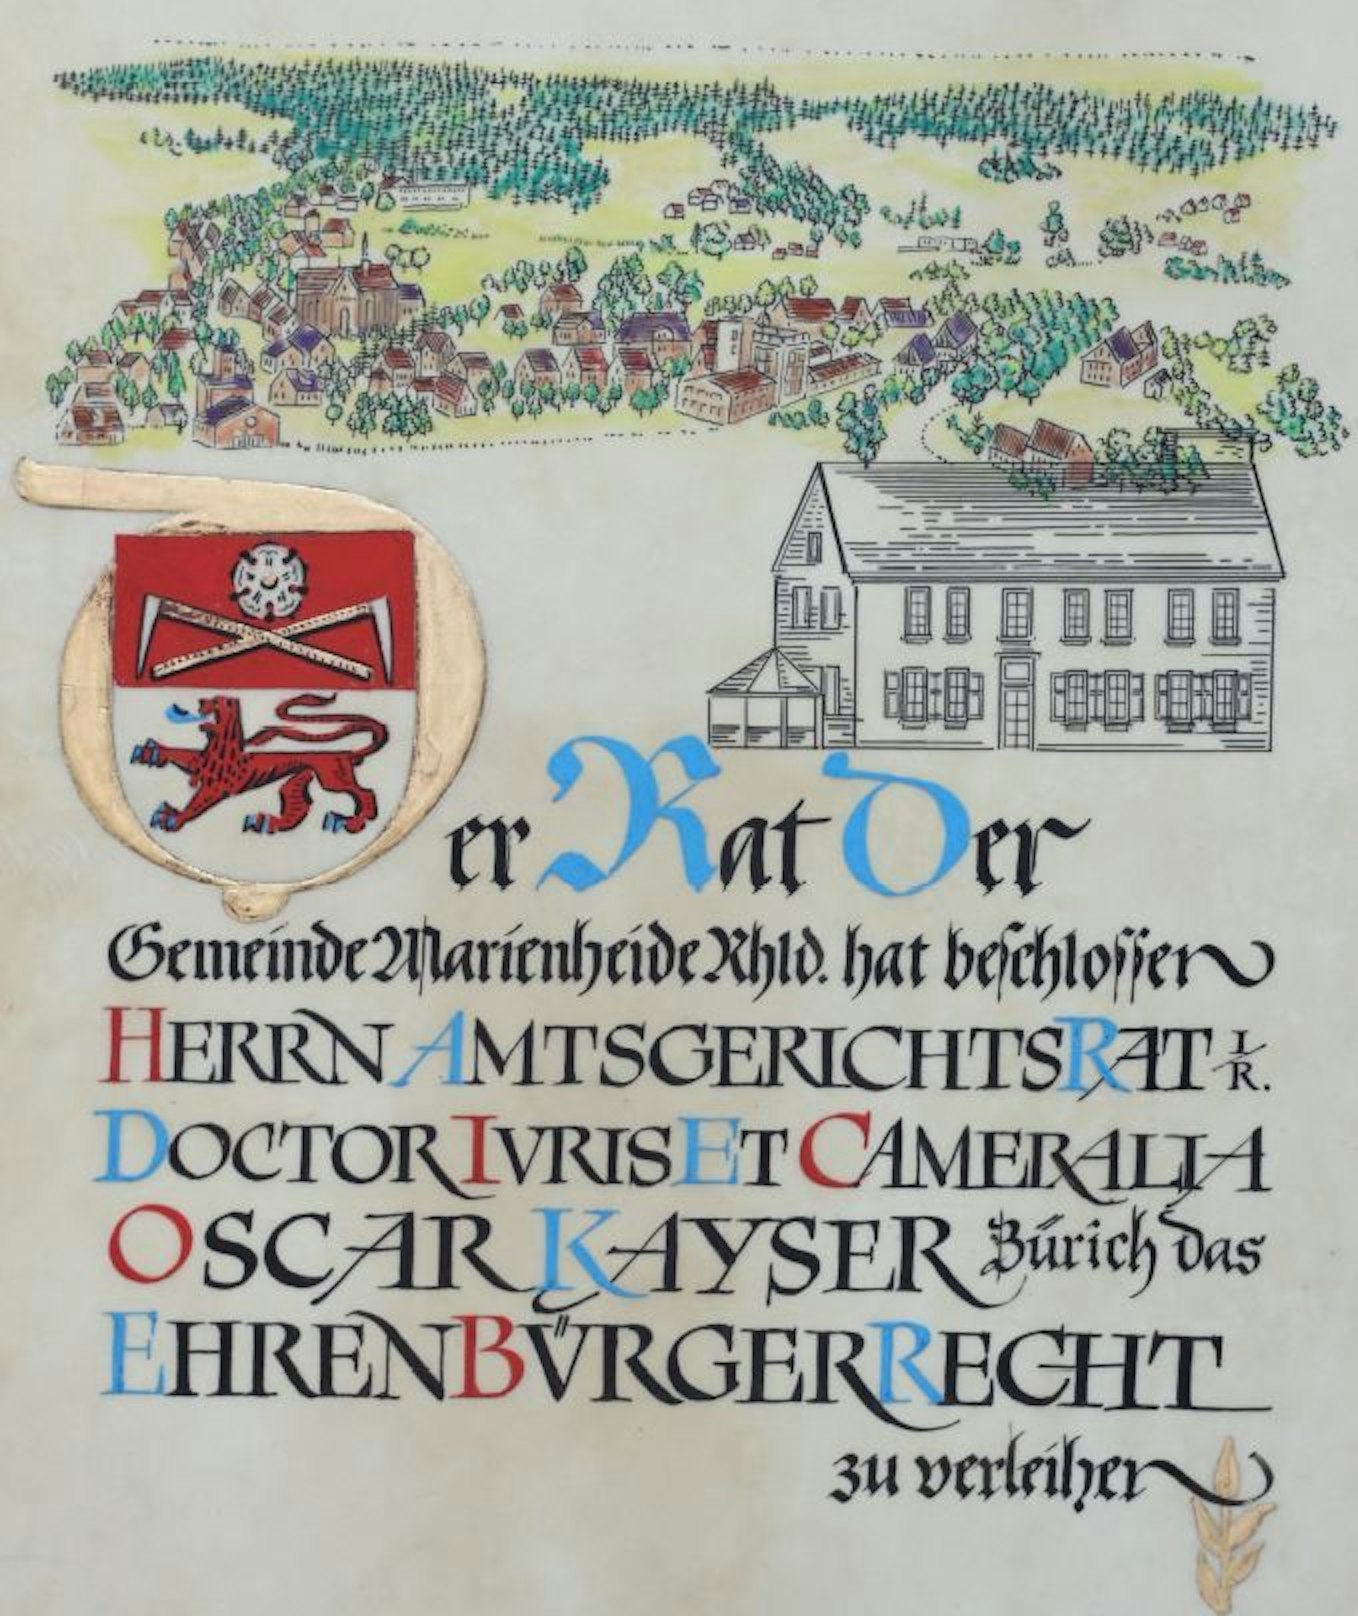 Mit dieser handgezeichneten Urkunde verlieh die Gemeinde Marienheide Dr. Oscar Kayser 1959 den Ehrenbürgertitel.